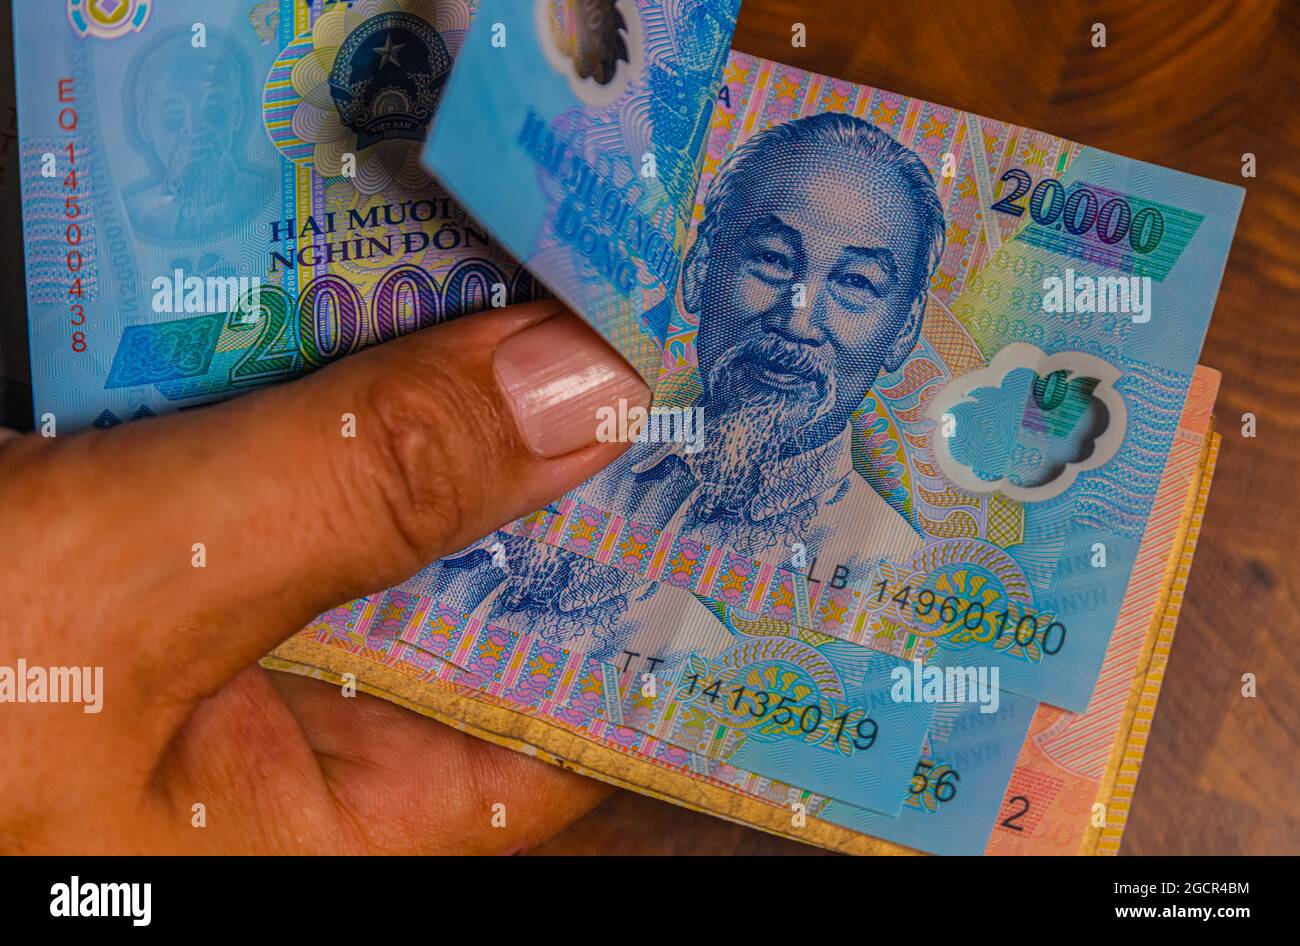 La main masculine tient un fan de Vietnames Dong billet, la monnaie du Vietnam. Gros plan Polymer Money du Vietnam. 20000 Dong ou VND dans la main mâle. En fro Banque D'Images